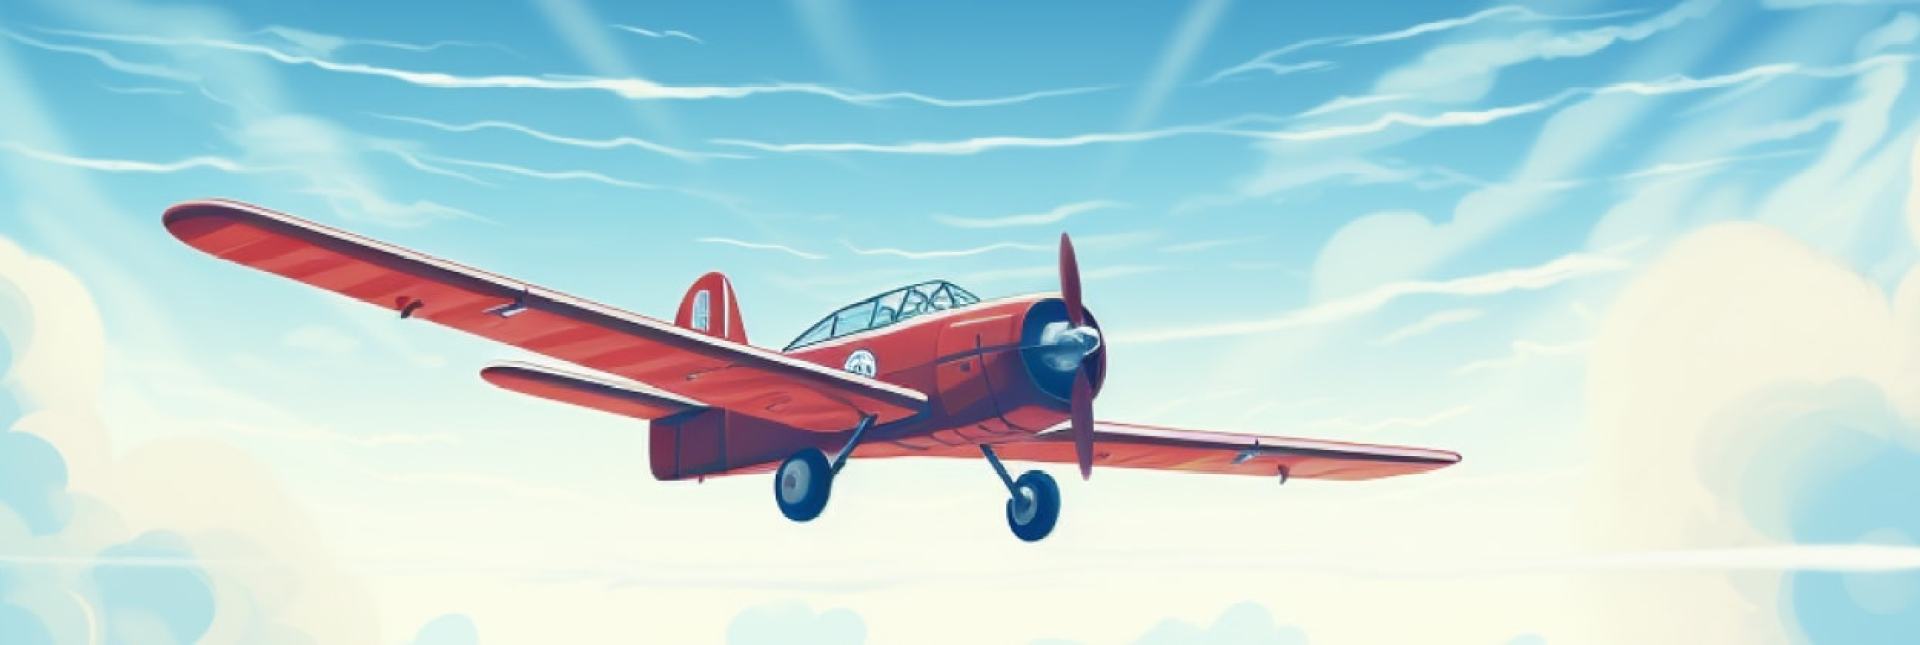 Aviator game on mobile